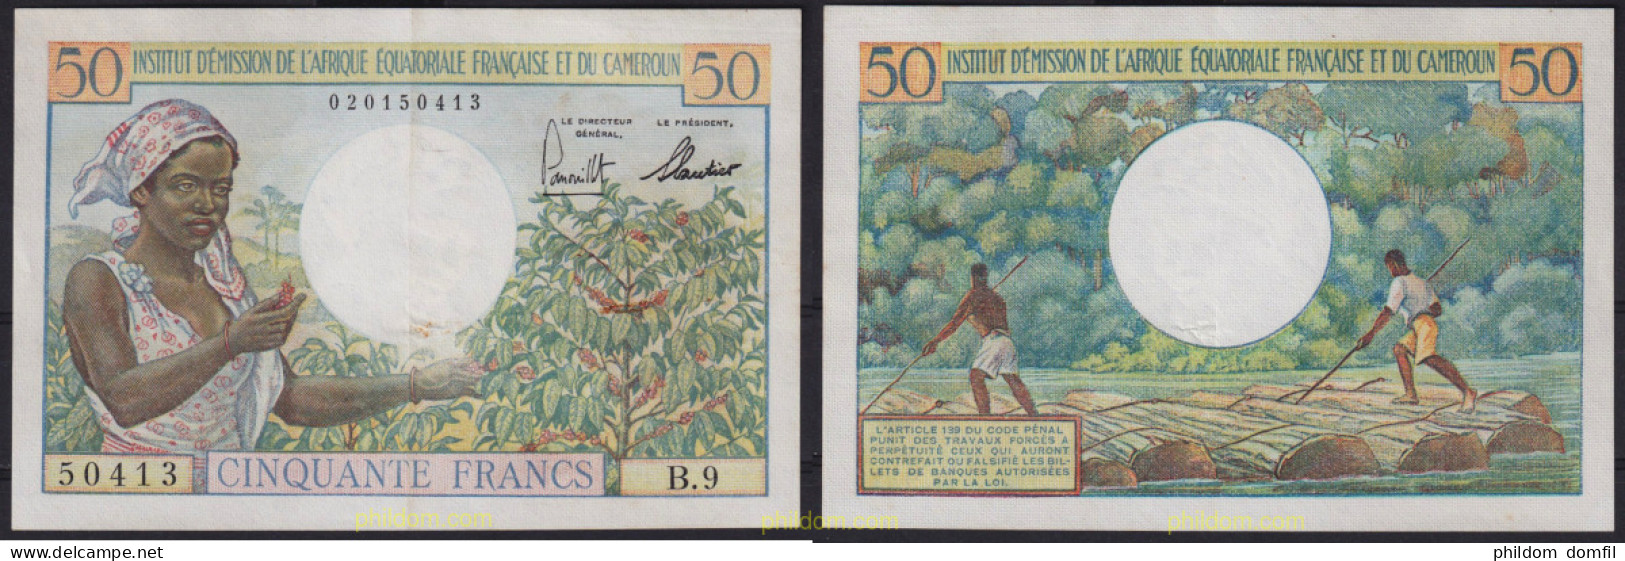 6401 CAMERUN 1957 CAMERUN 1957 50 FRANCS - Kameroen